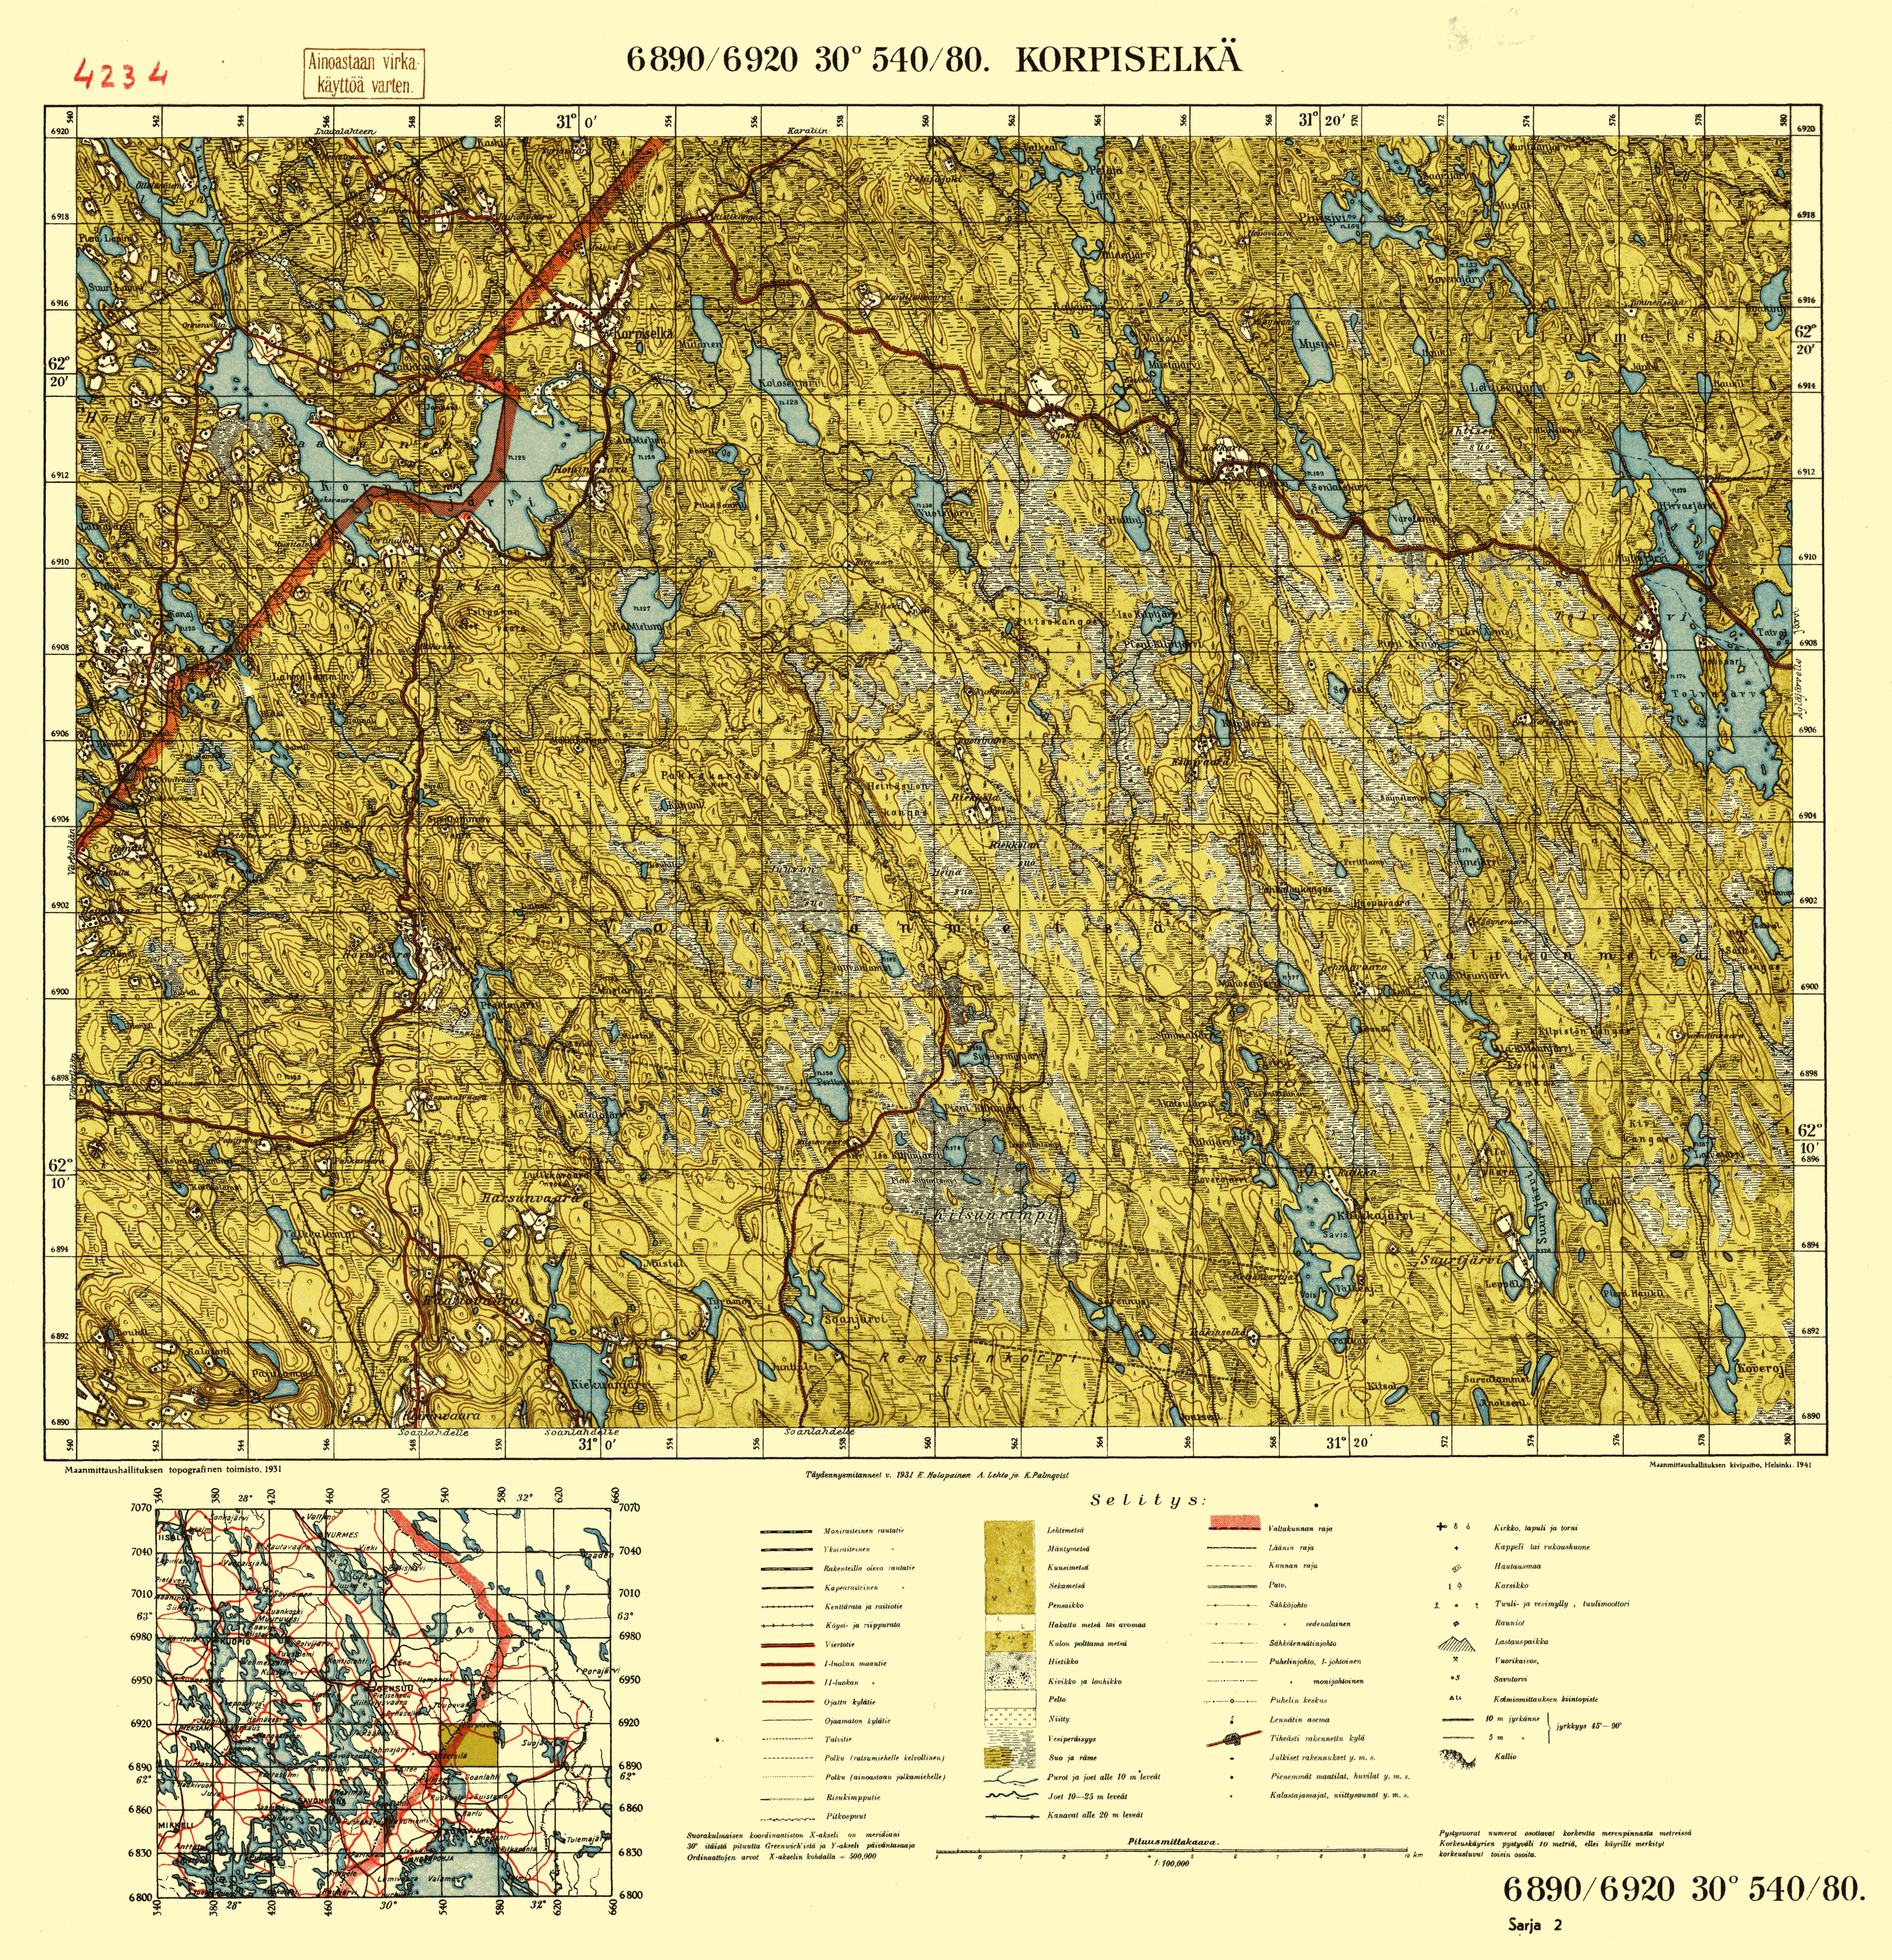 Korpiselkja. Korpiselkä. Topografikartta 4234. Topographic map from 1941